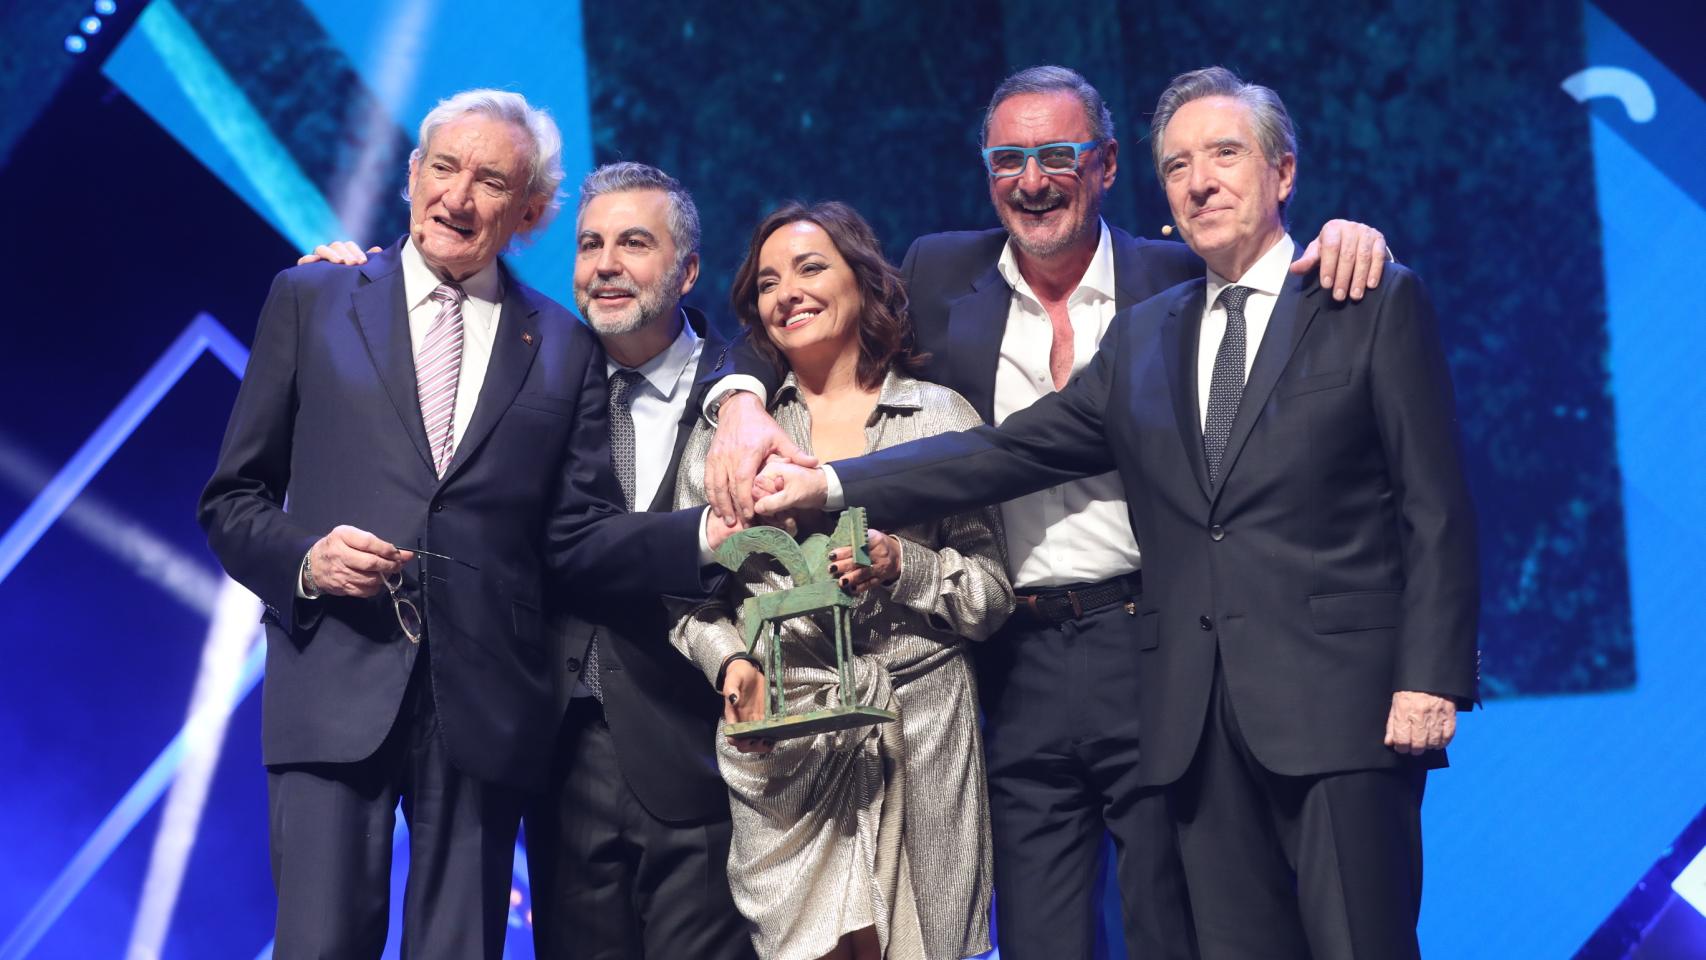 Luis del Olmo, Carlos Alsina, Pepa Bueno, Carlos Herrera e Iñaki Gabilondo, durante la entrega de los Premios Ondas 2019 realizada esta semana.